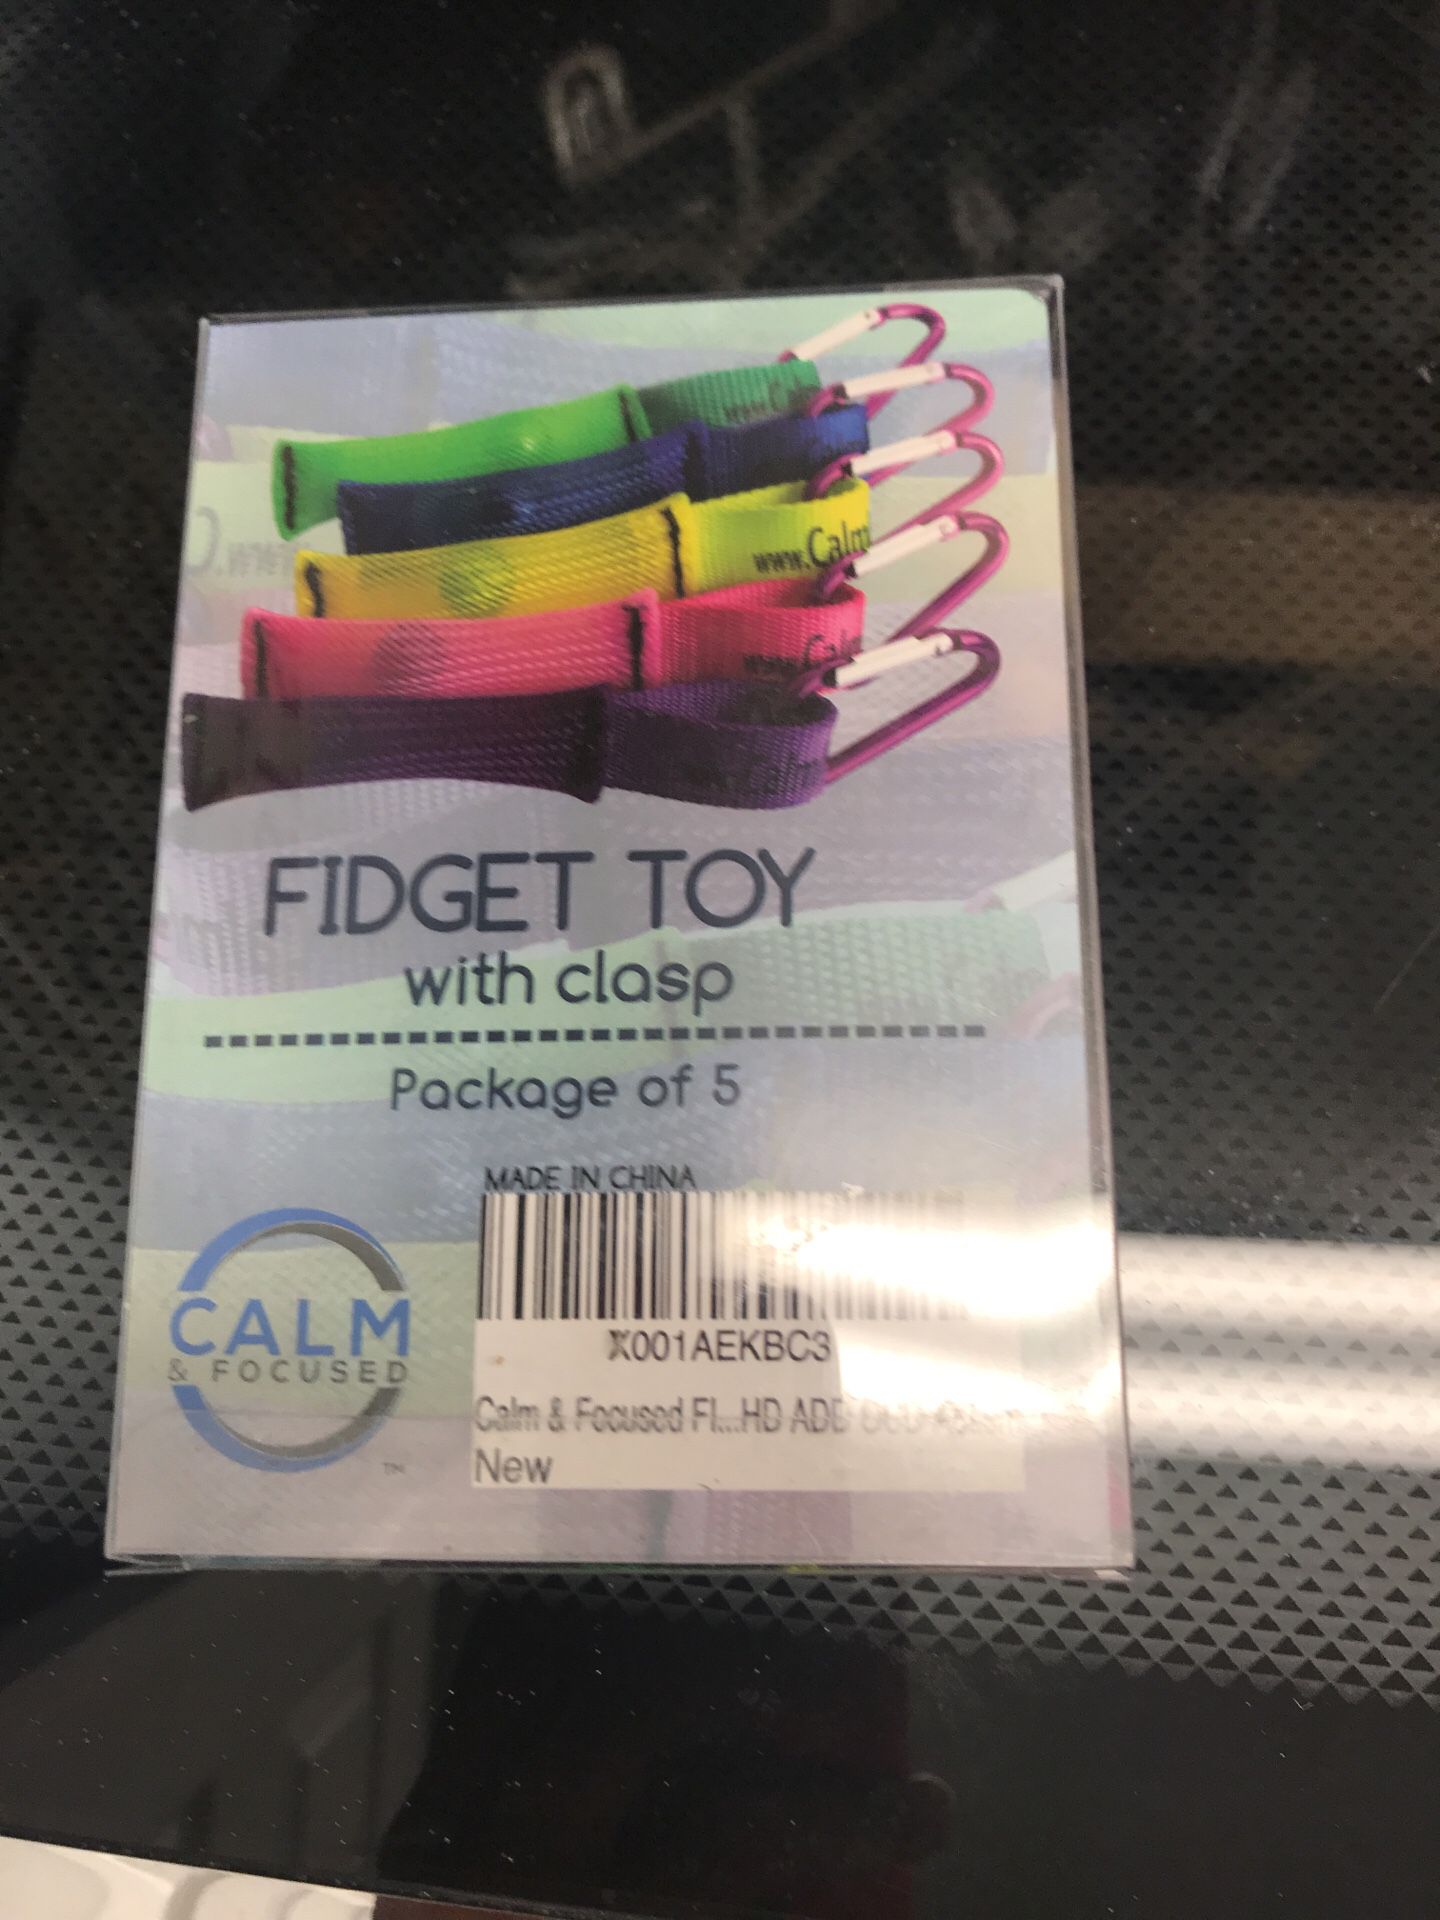 Fidget toys